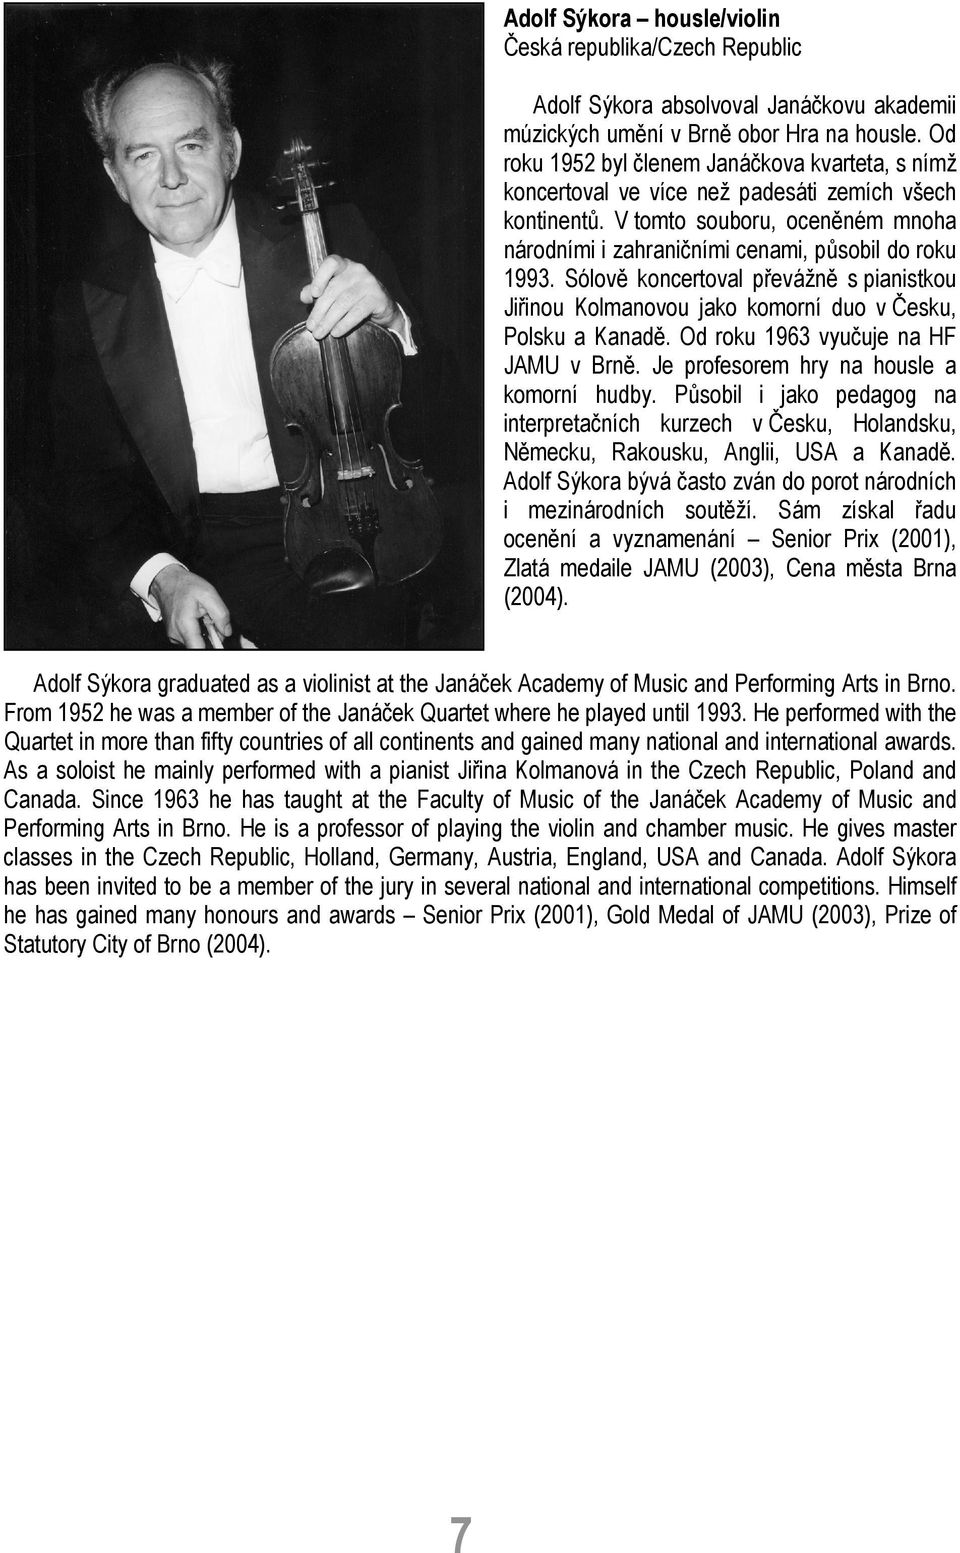 Sólově koncertoval převážně s pianistkou Jiřinou Kolmanovou jako komorní duo v Česku, Polsku a Kanadě. Od roku 1963 vyučuje na HF JAMU v Brně. Je profesorem hry na housle a komorní hudby.